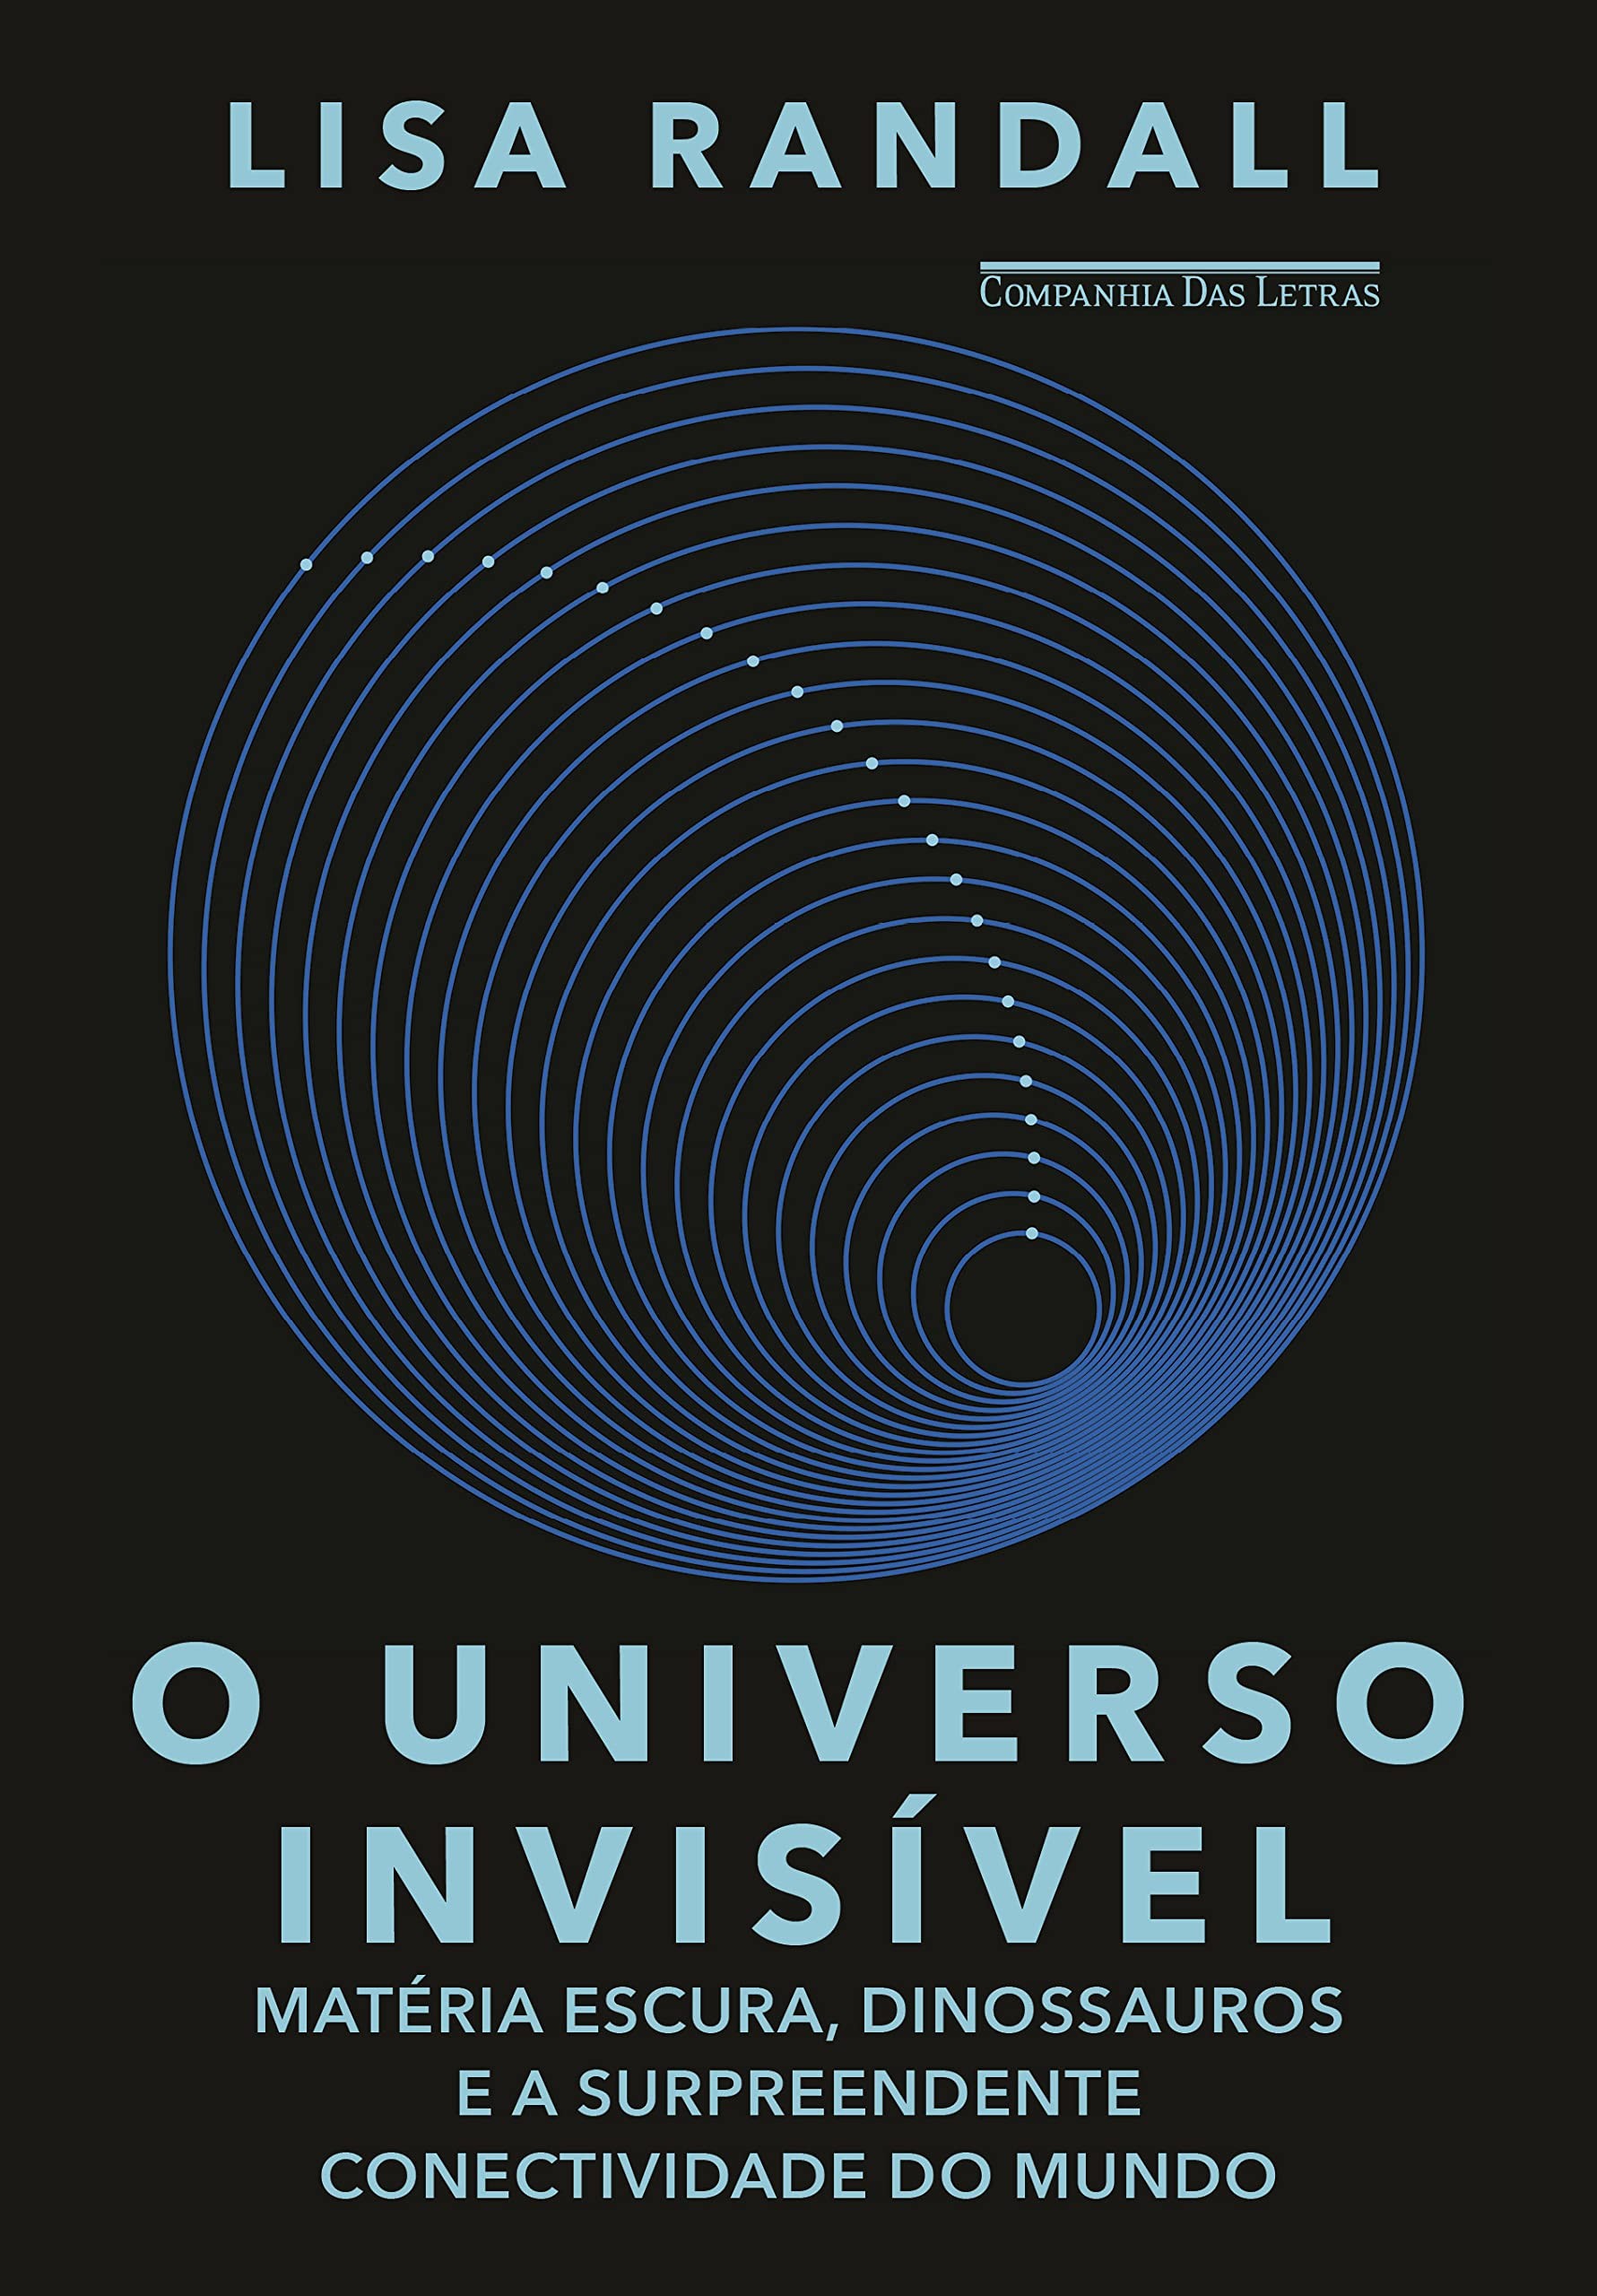 O Universo Invisível: matéria escura, dinossauros e a surpreendente conectividade do mundo, por Lisa Randall (Companhia das Letras, R$ 109,90, 418 páginas) (Foto: Divulgação)